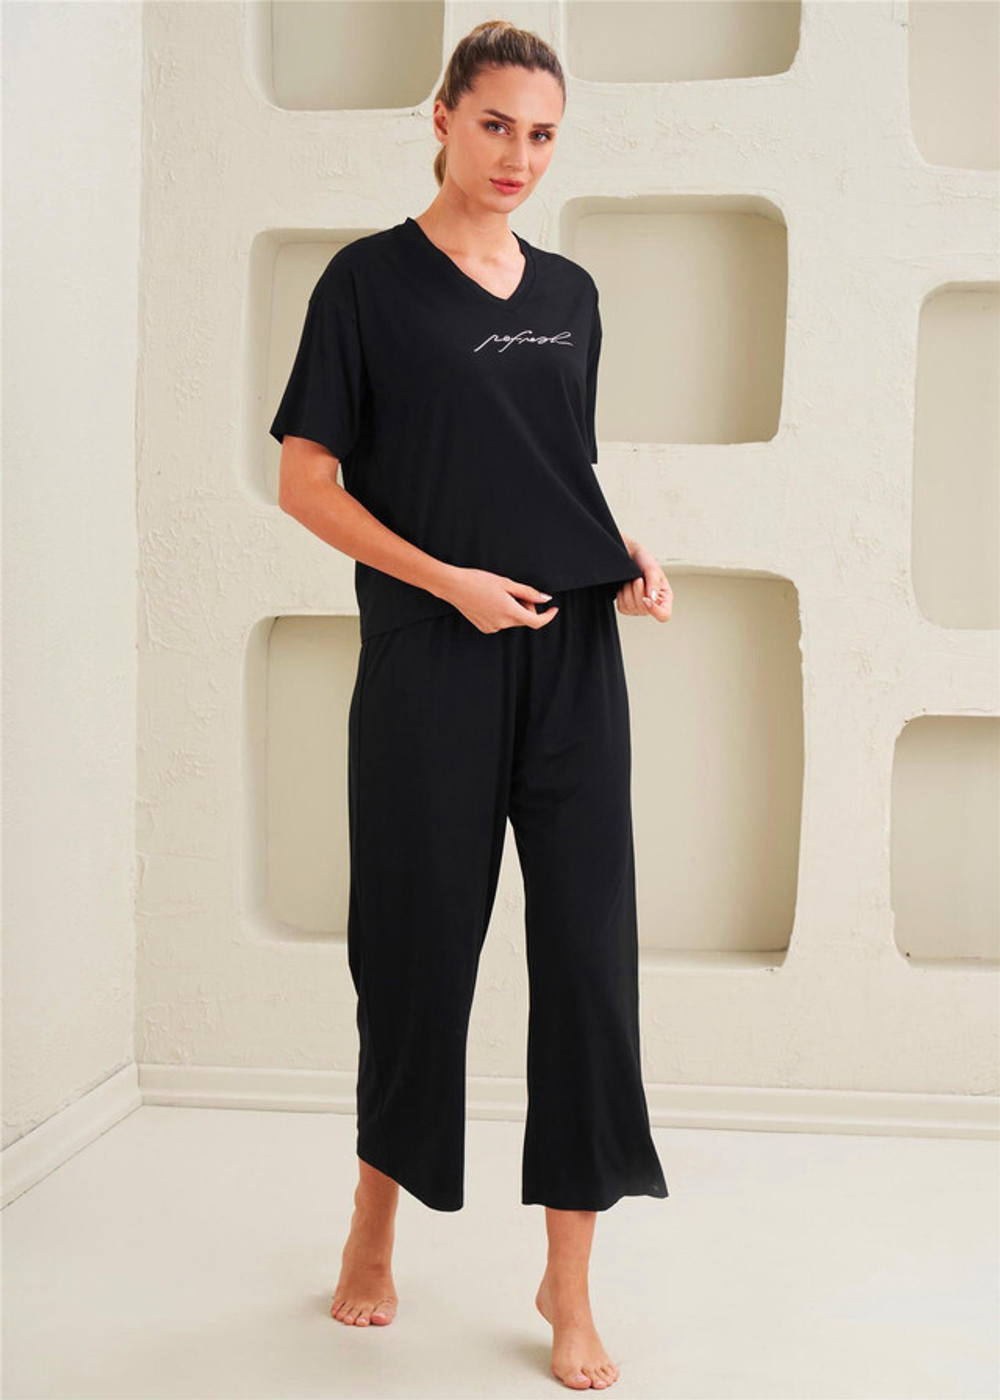 Женская капри пижама - Базовая, классическая, спортивная - Черная - 14055